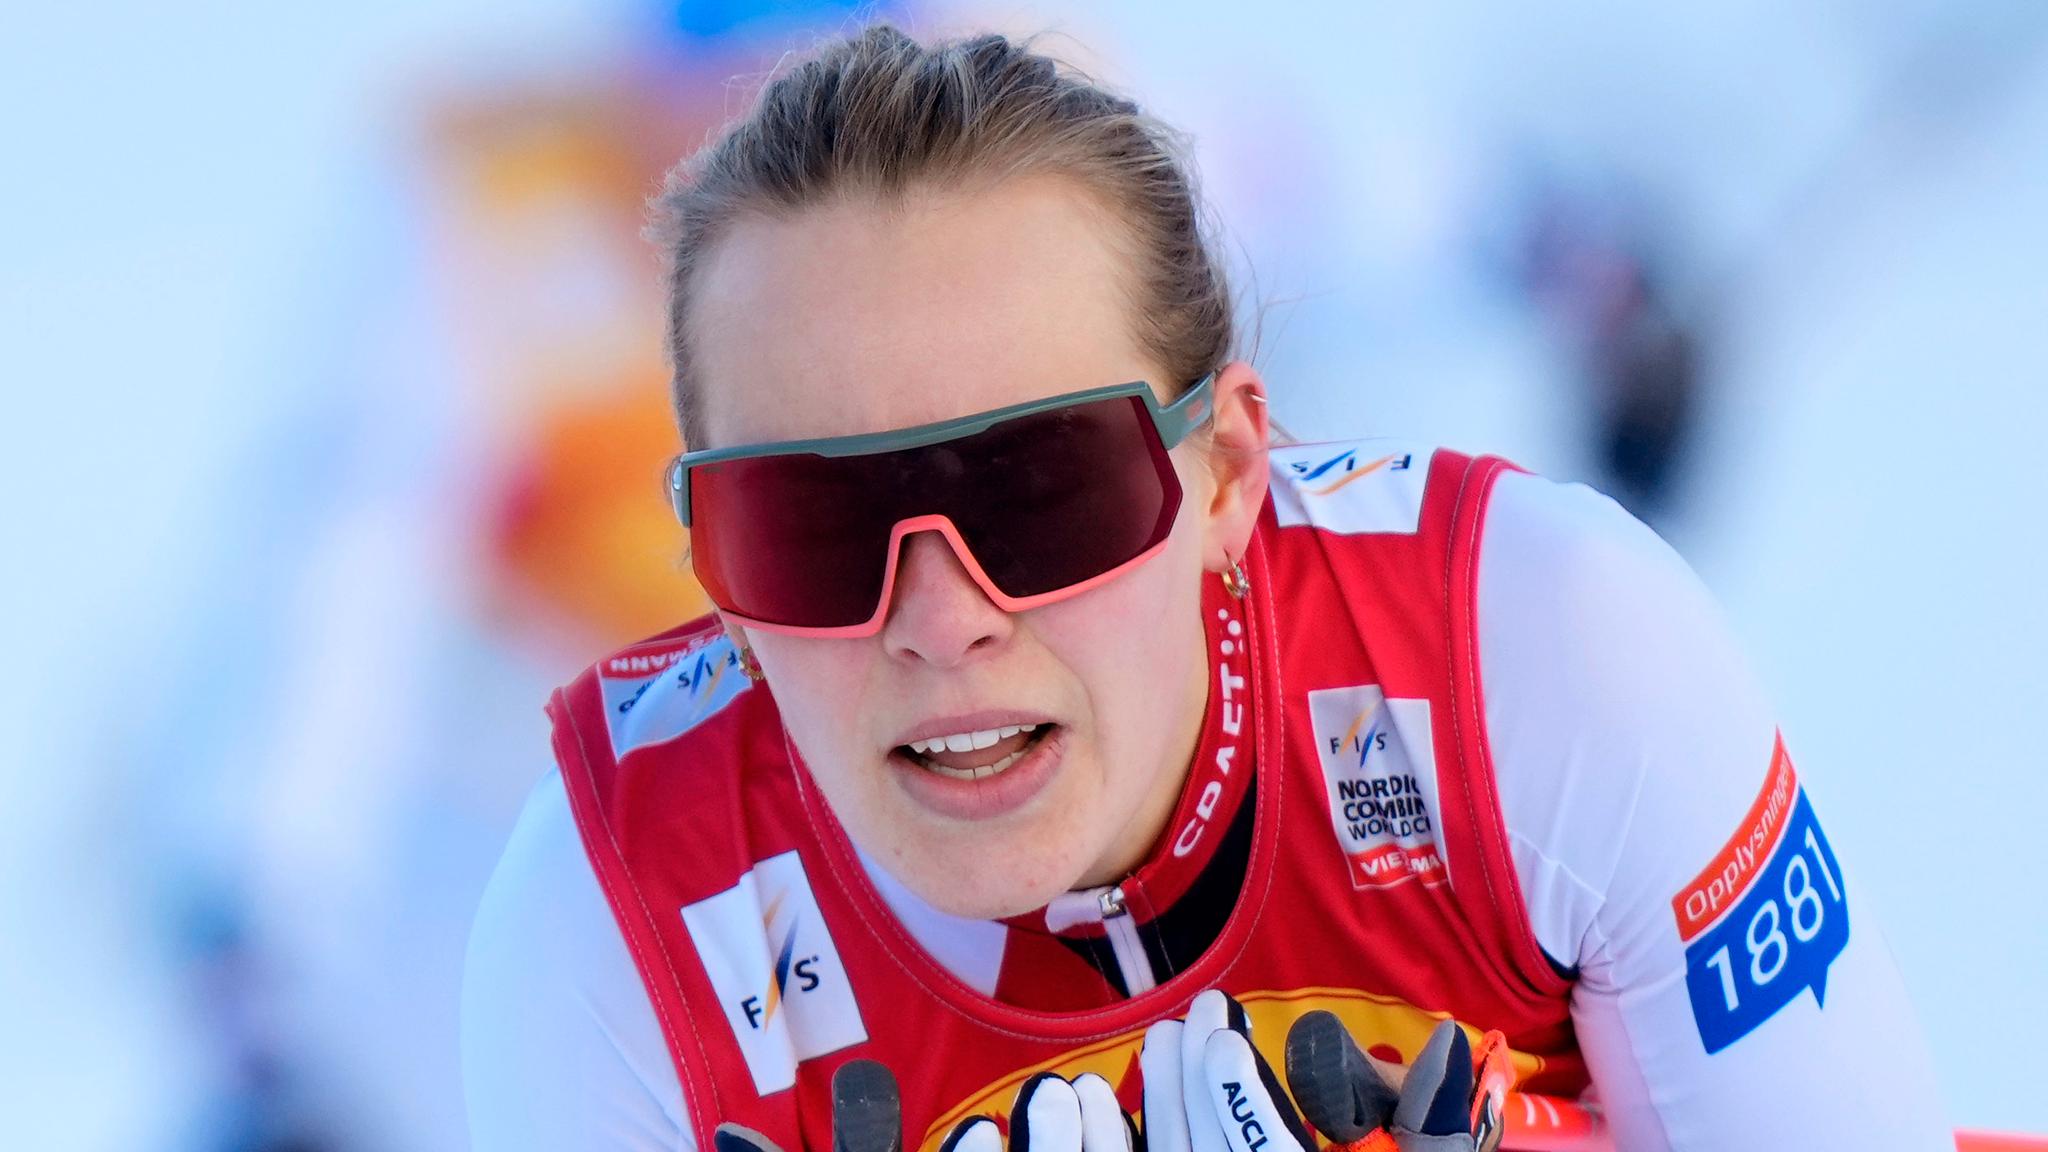 Fire norske kvinner best i konkurransen som de ikke liker